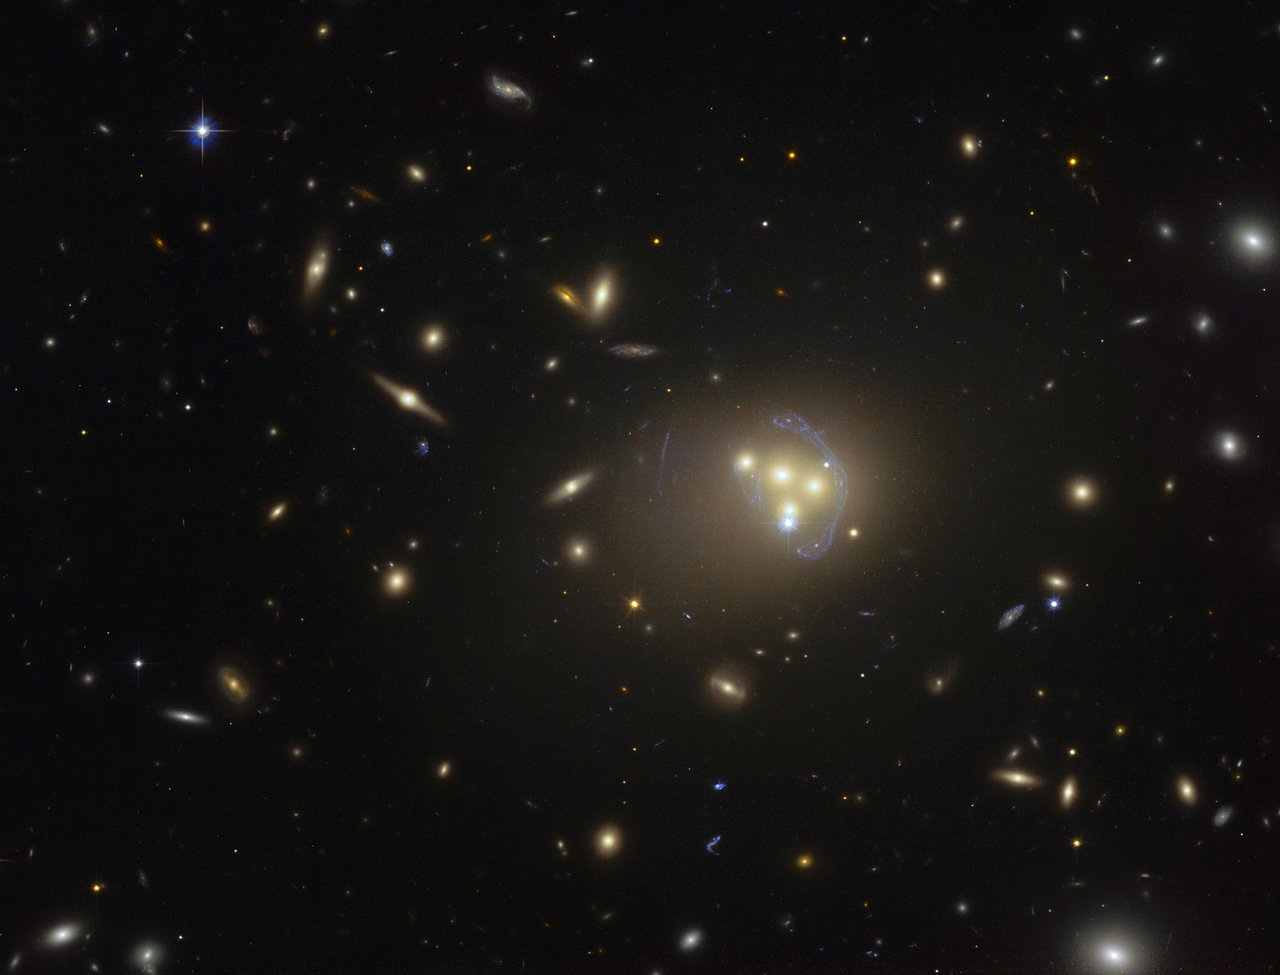 Esta imagen del telescopio espacial Hubble de NASA/ESA muestra el rico cúmulo de galaxias Abell 3827. Las extrañas estructuras azules alrededor de las galaxias centrales son una galaxia distante, situada detrás del cúmulo, vista con el efecto de lente gravitacional. Las observaciones de las cuatro galaxias centrales fusionándose han proporcionado indicios de que la materia oscura que rodea a una de las galaxias no se mueve con la propia galaxia, lo cual posiblemente implica que están teniendo lugar interacciones de naturaleza desconocida en la materia oscura con otra materia oscura.